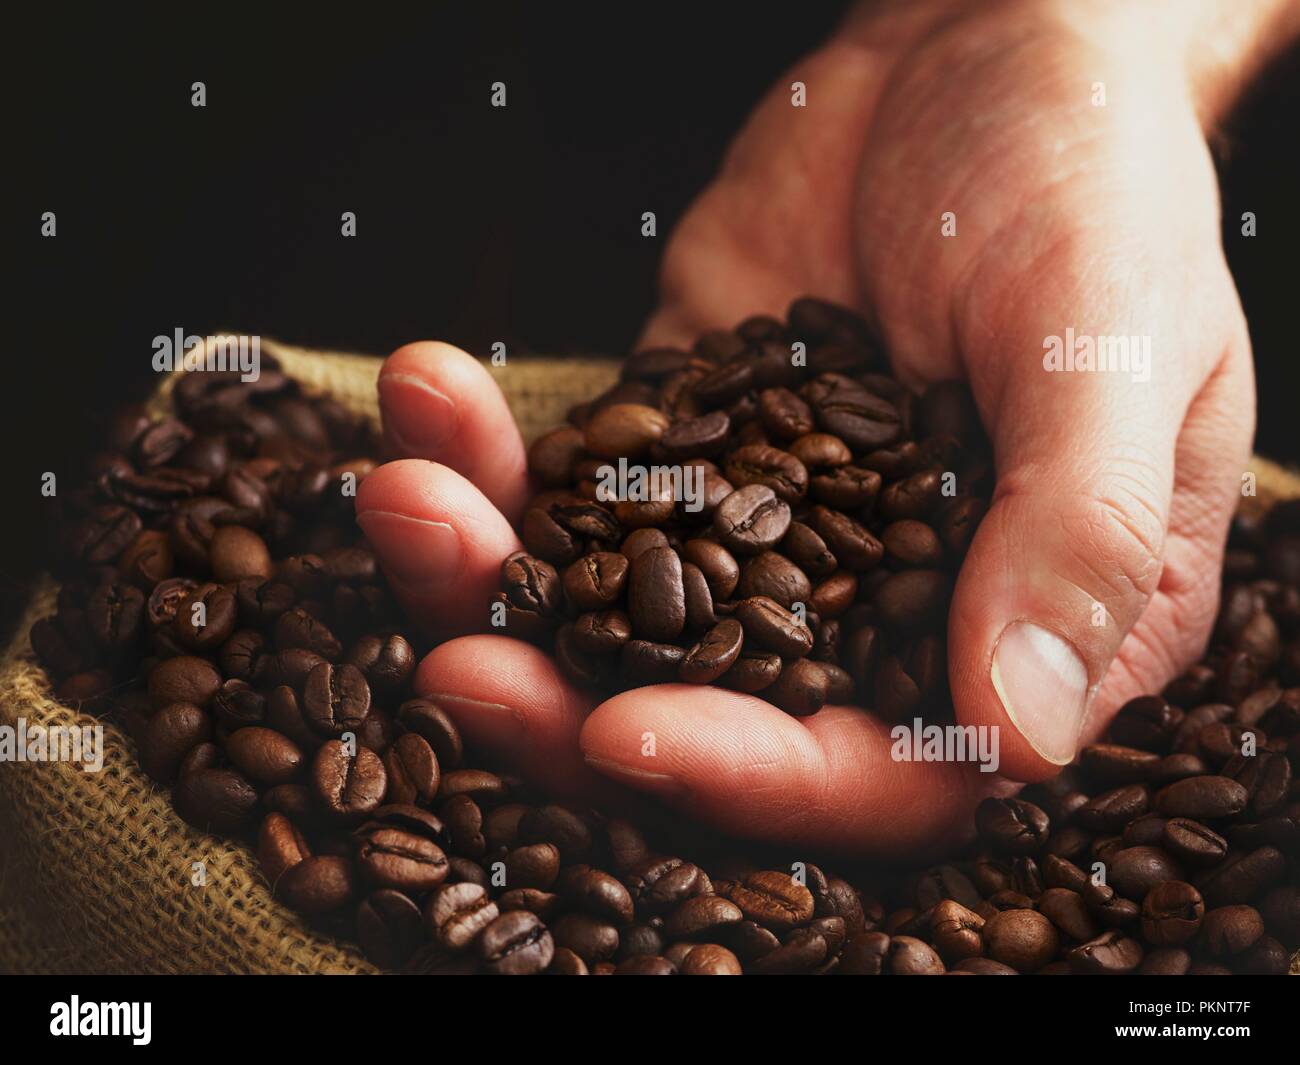 Personne à main pleine de grains de café. Banque D'Images